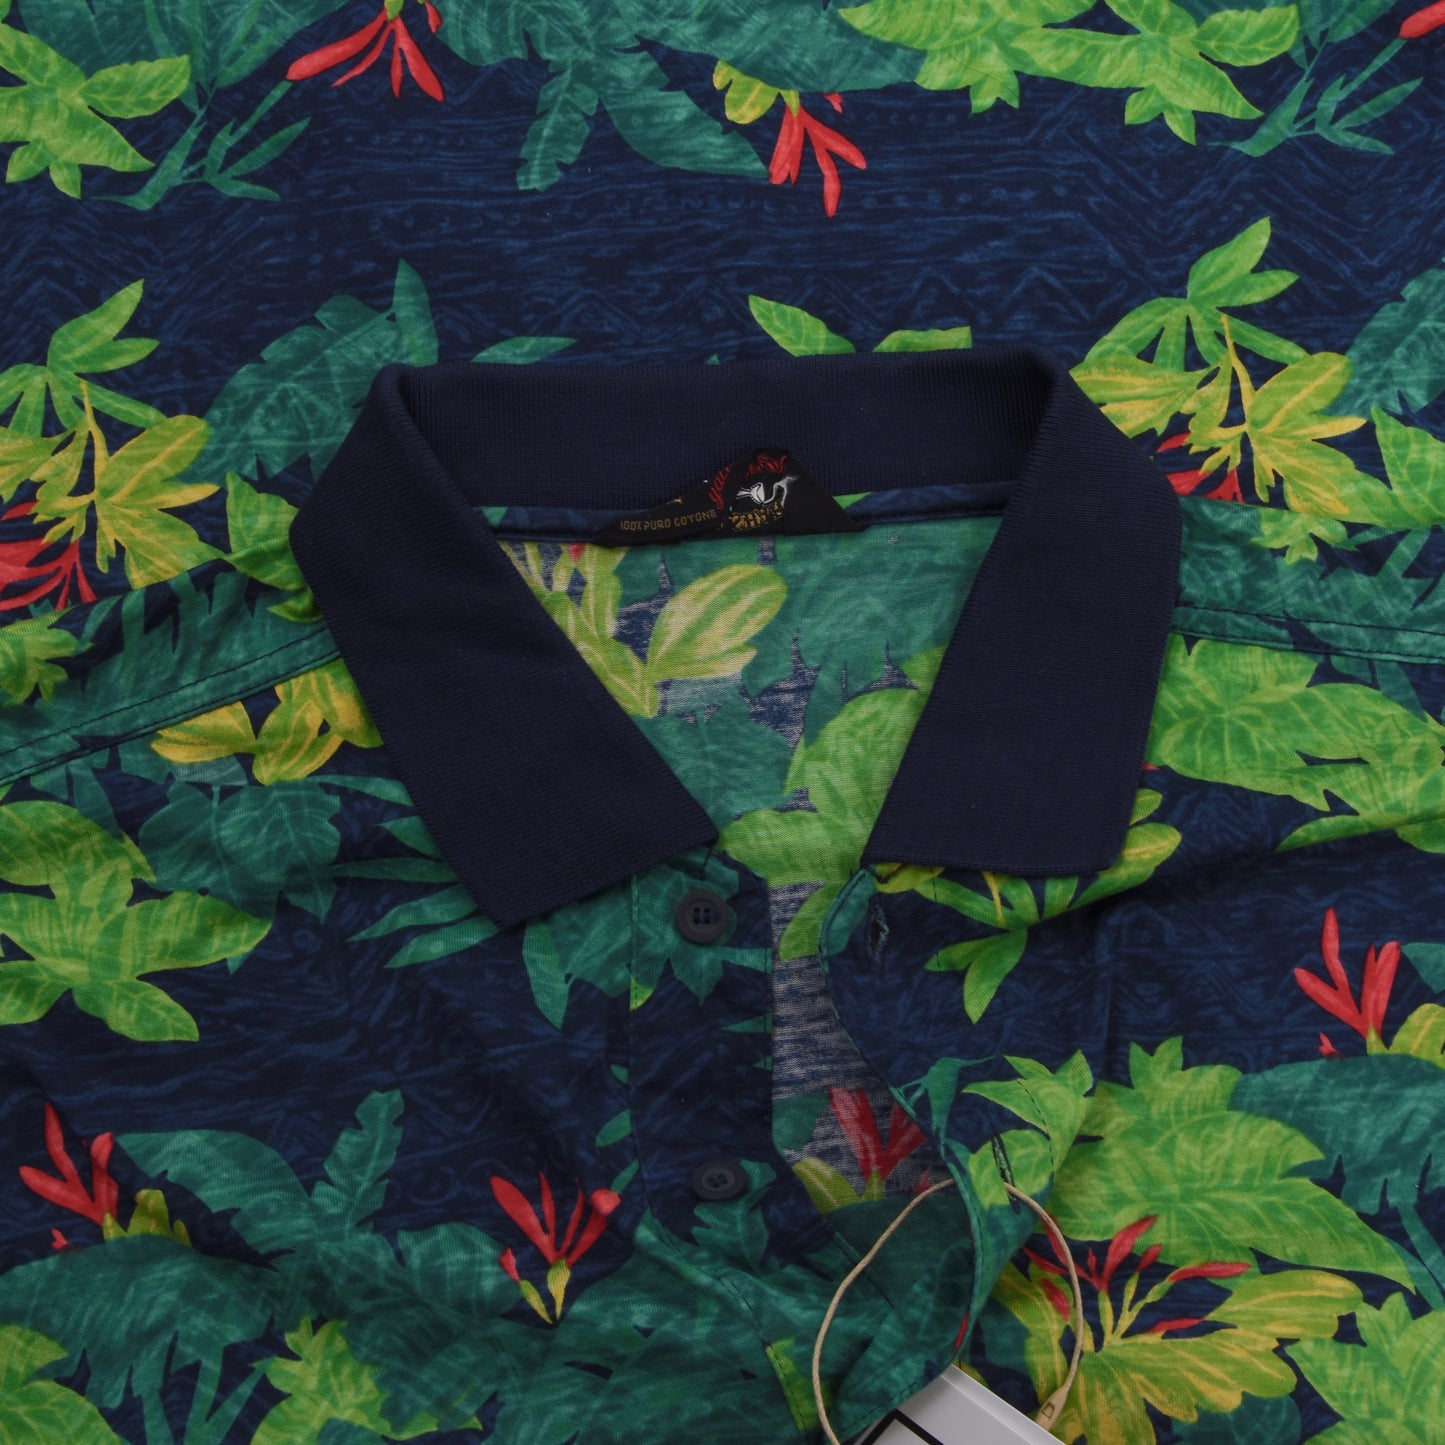 Paul & Shark Yachting Polo Shirt Size 4XL - Leaf Print